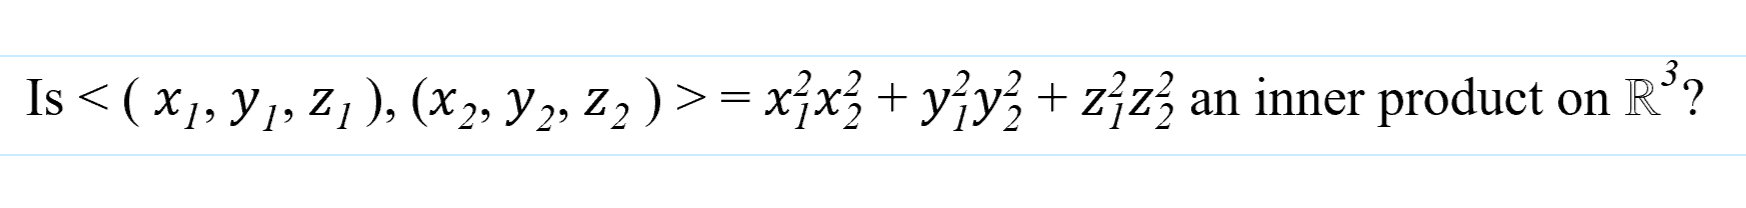 Is < ( x1, Y1, Z 1), (x2, Y 2, Z2 ) >= xjx + yjy+zźz3 an inner product on
R'?
